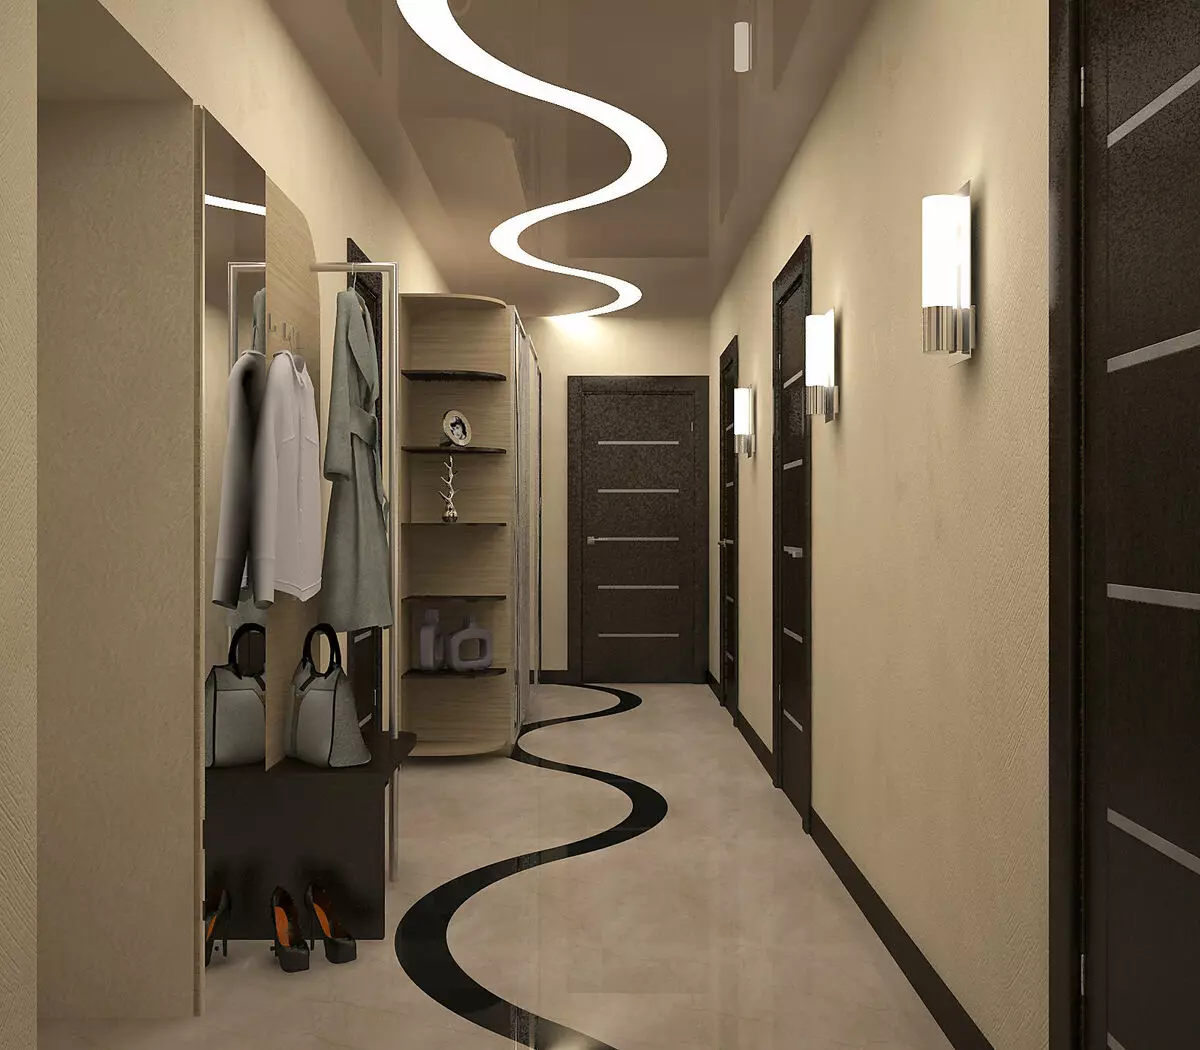 Поставь свет в коридоре. Коридор / Koridor (2022). Длинная прихожая. Освещение в коридоре. Дизайн коридора.